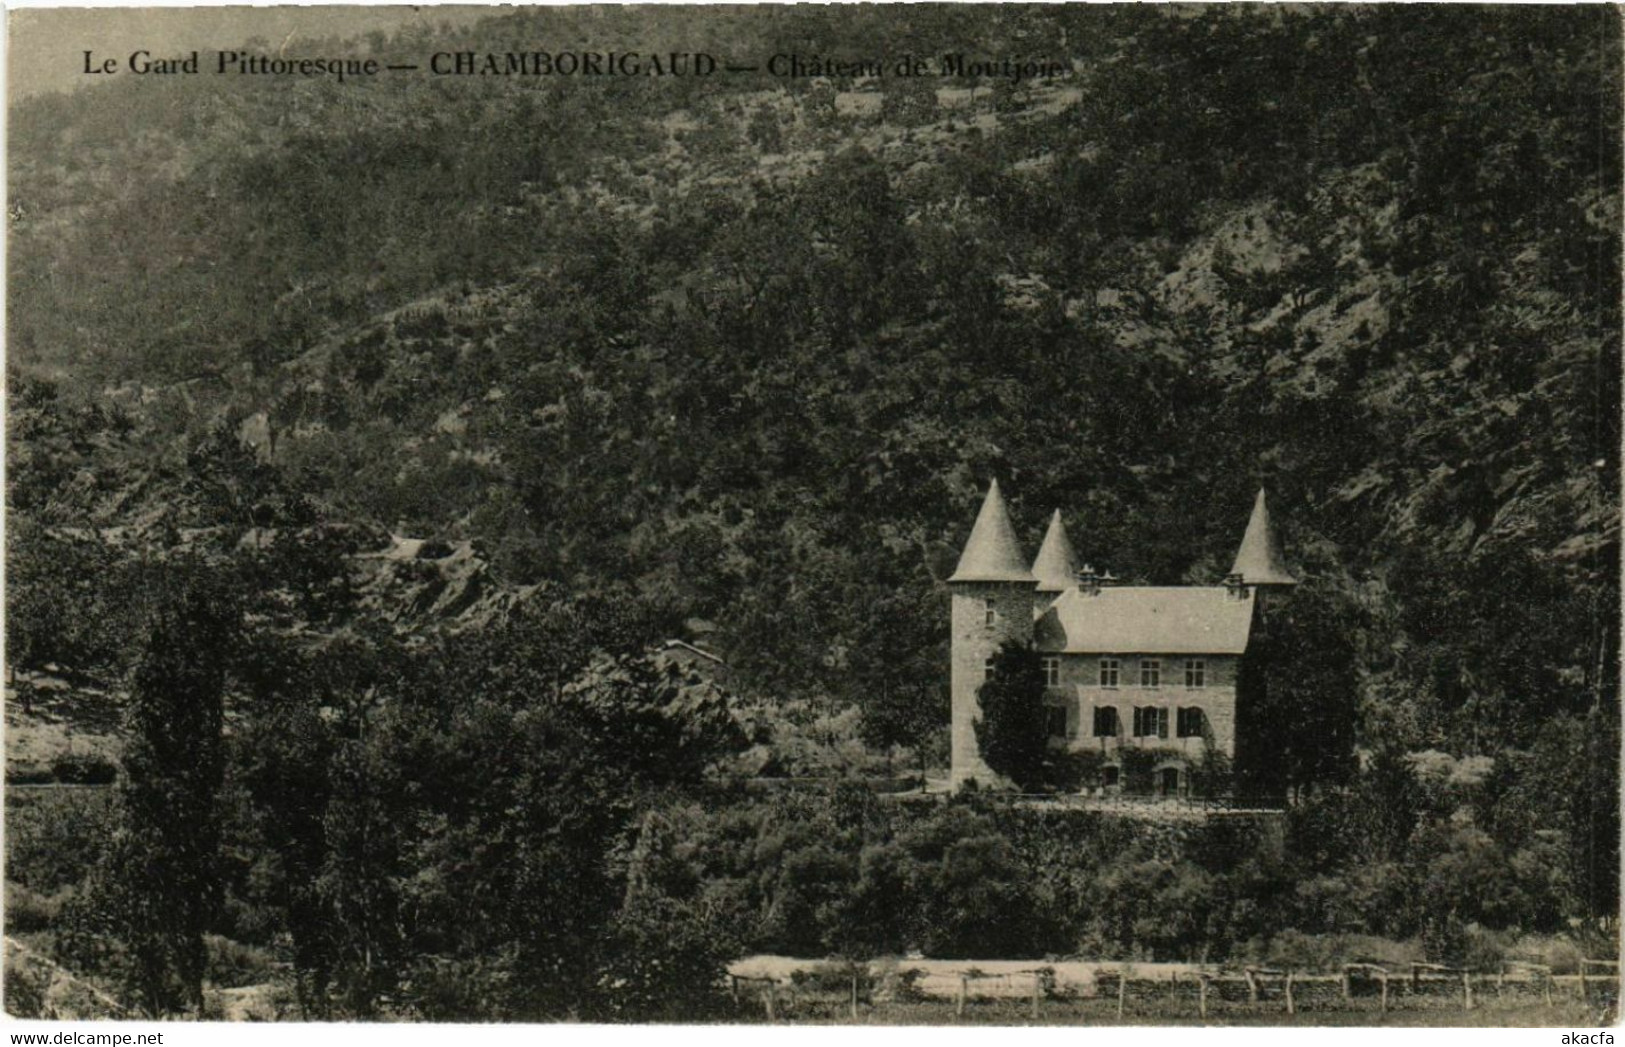 CPA AK Le Gard Pittoresque - CHAMBORIGAUD - Chateau De Moutjou (582068) - Chamborigaud